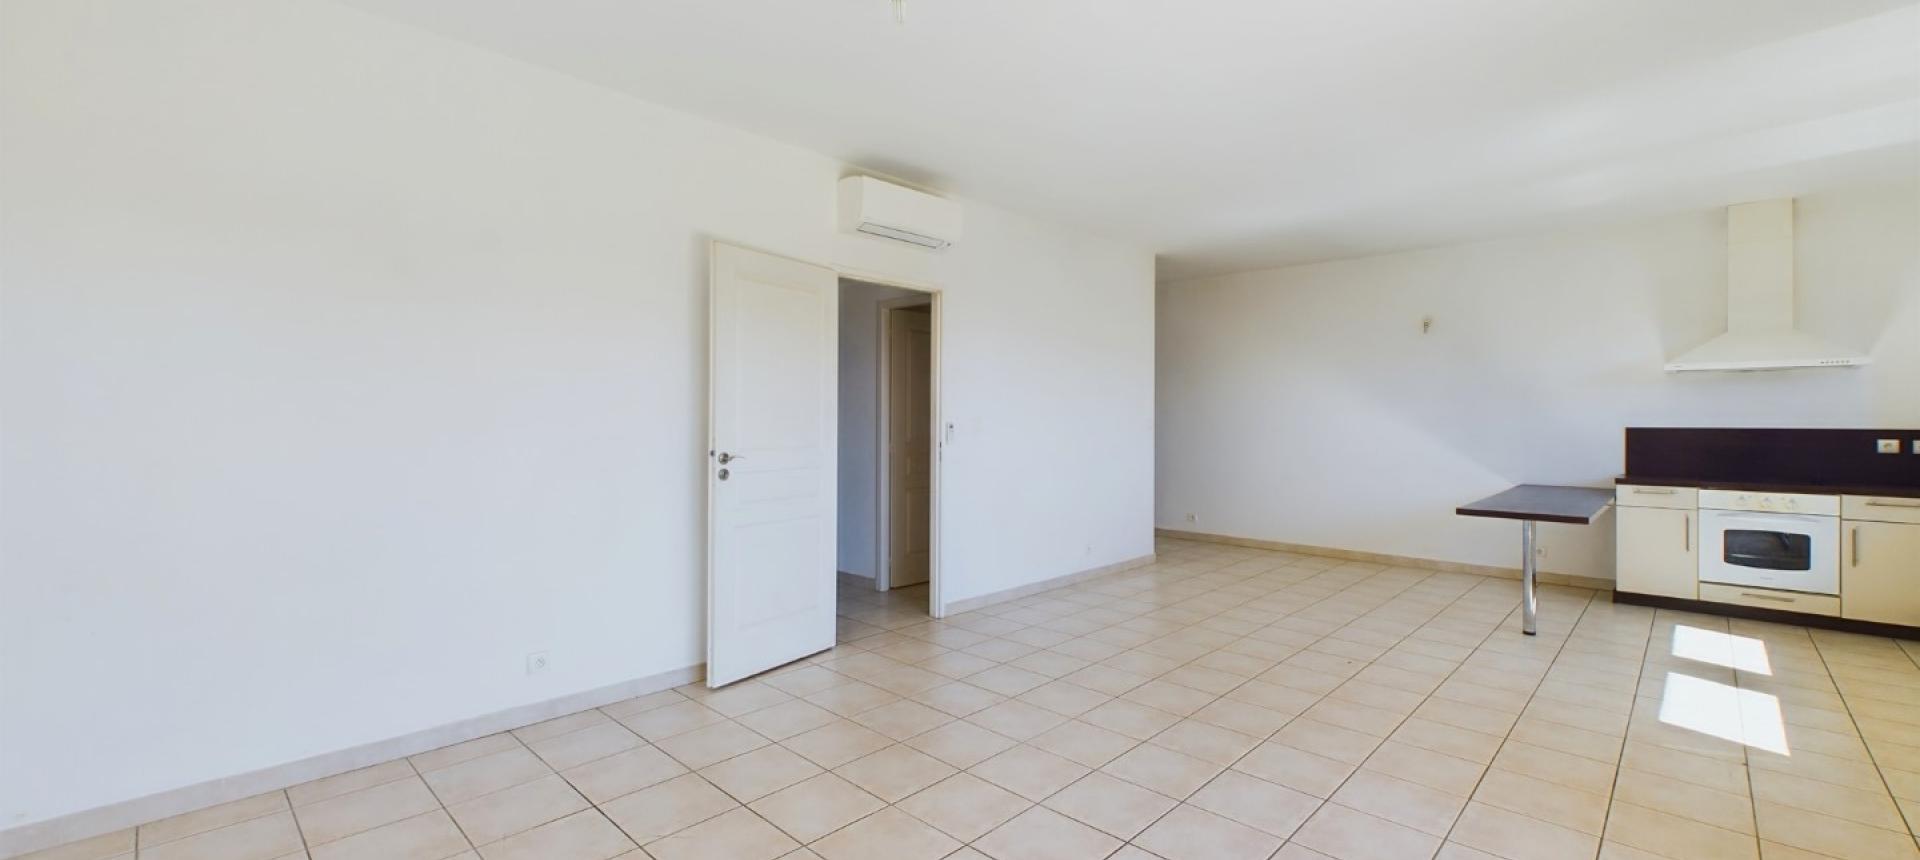 Appartement F3 à vendre à Ajaccio - Résidence A Spusata